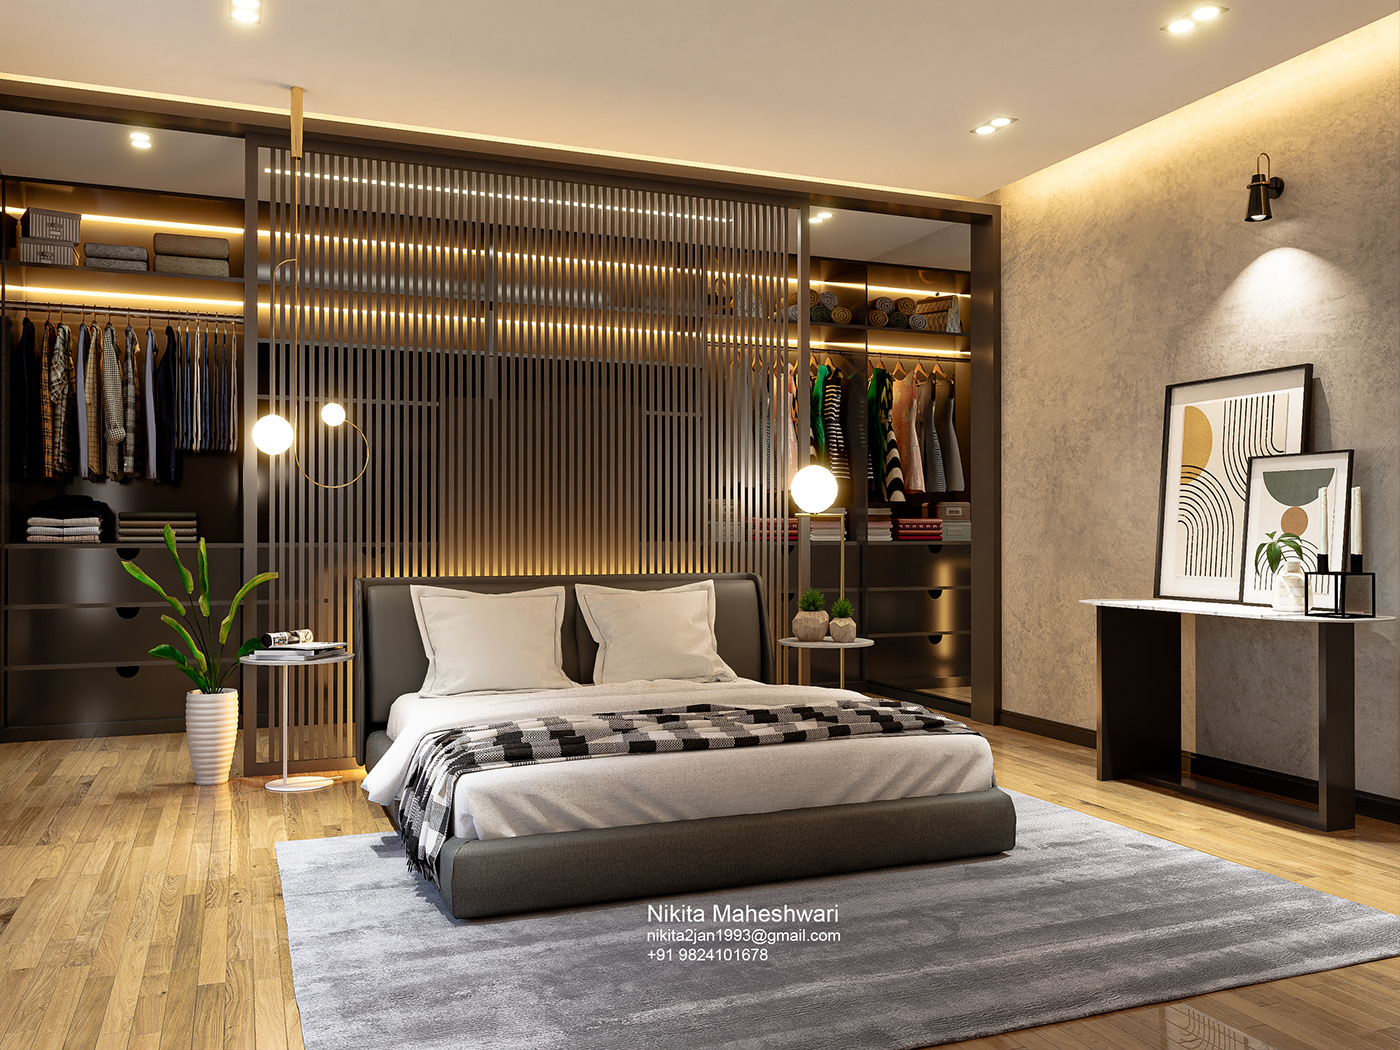 3d modeling animation  bedroom bedroom design interior design  interiordesigner modern professional SketchUP visualization